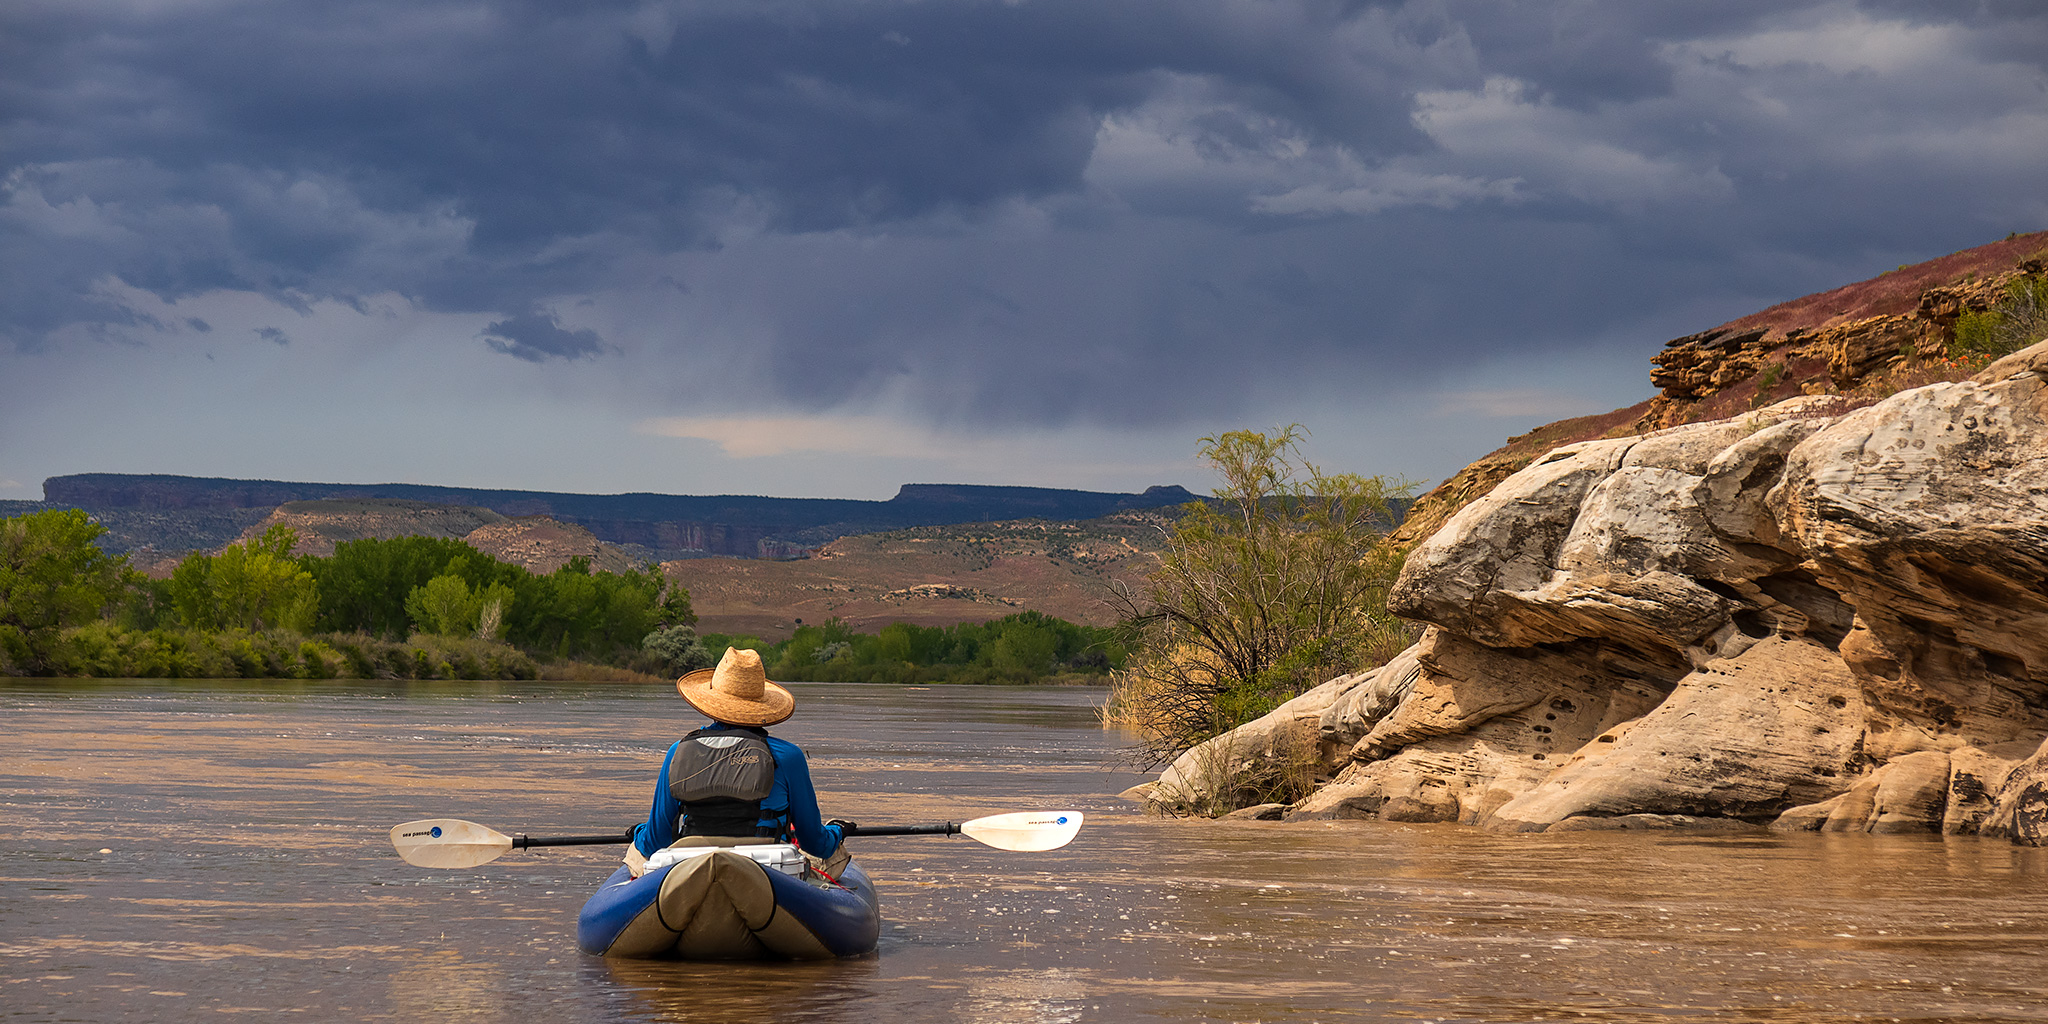 The Colorado River: Cisco Landing to Hittle Bottom